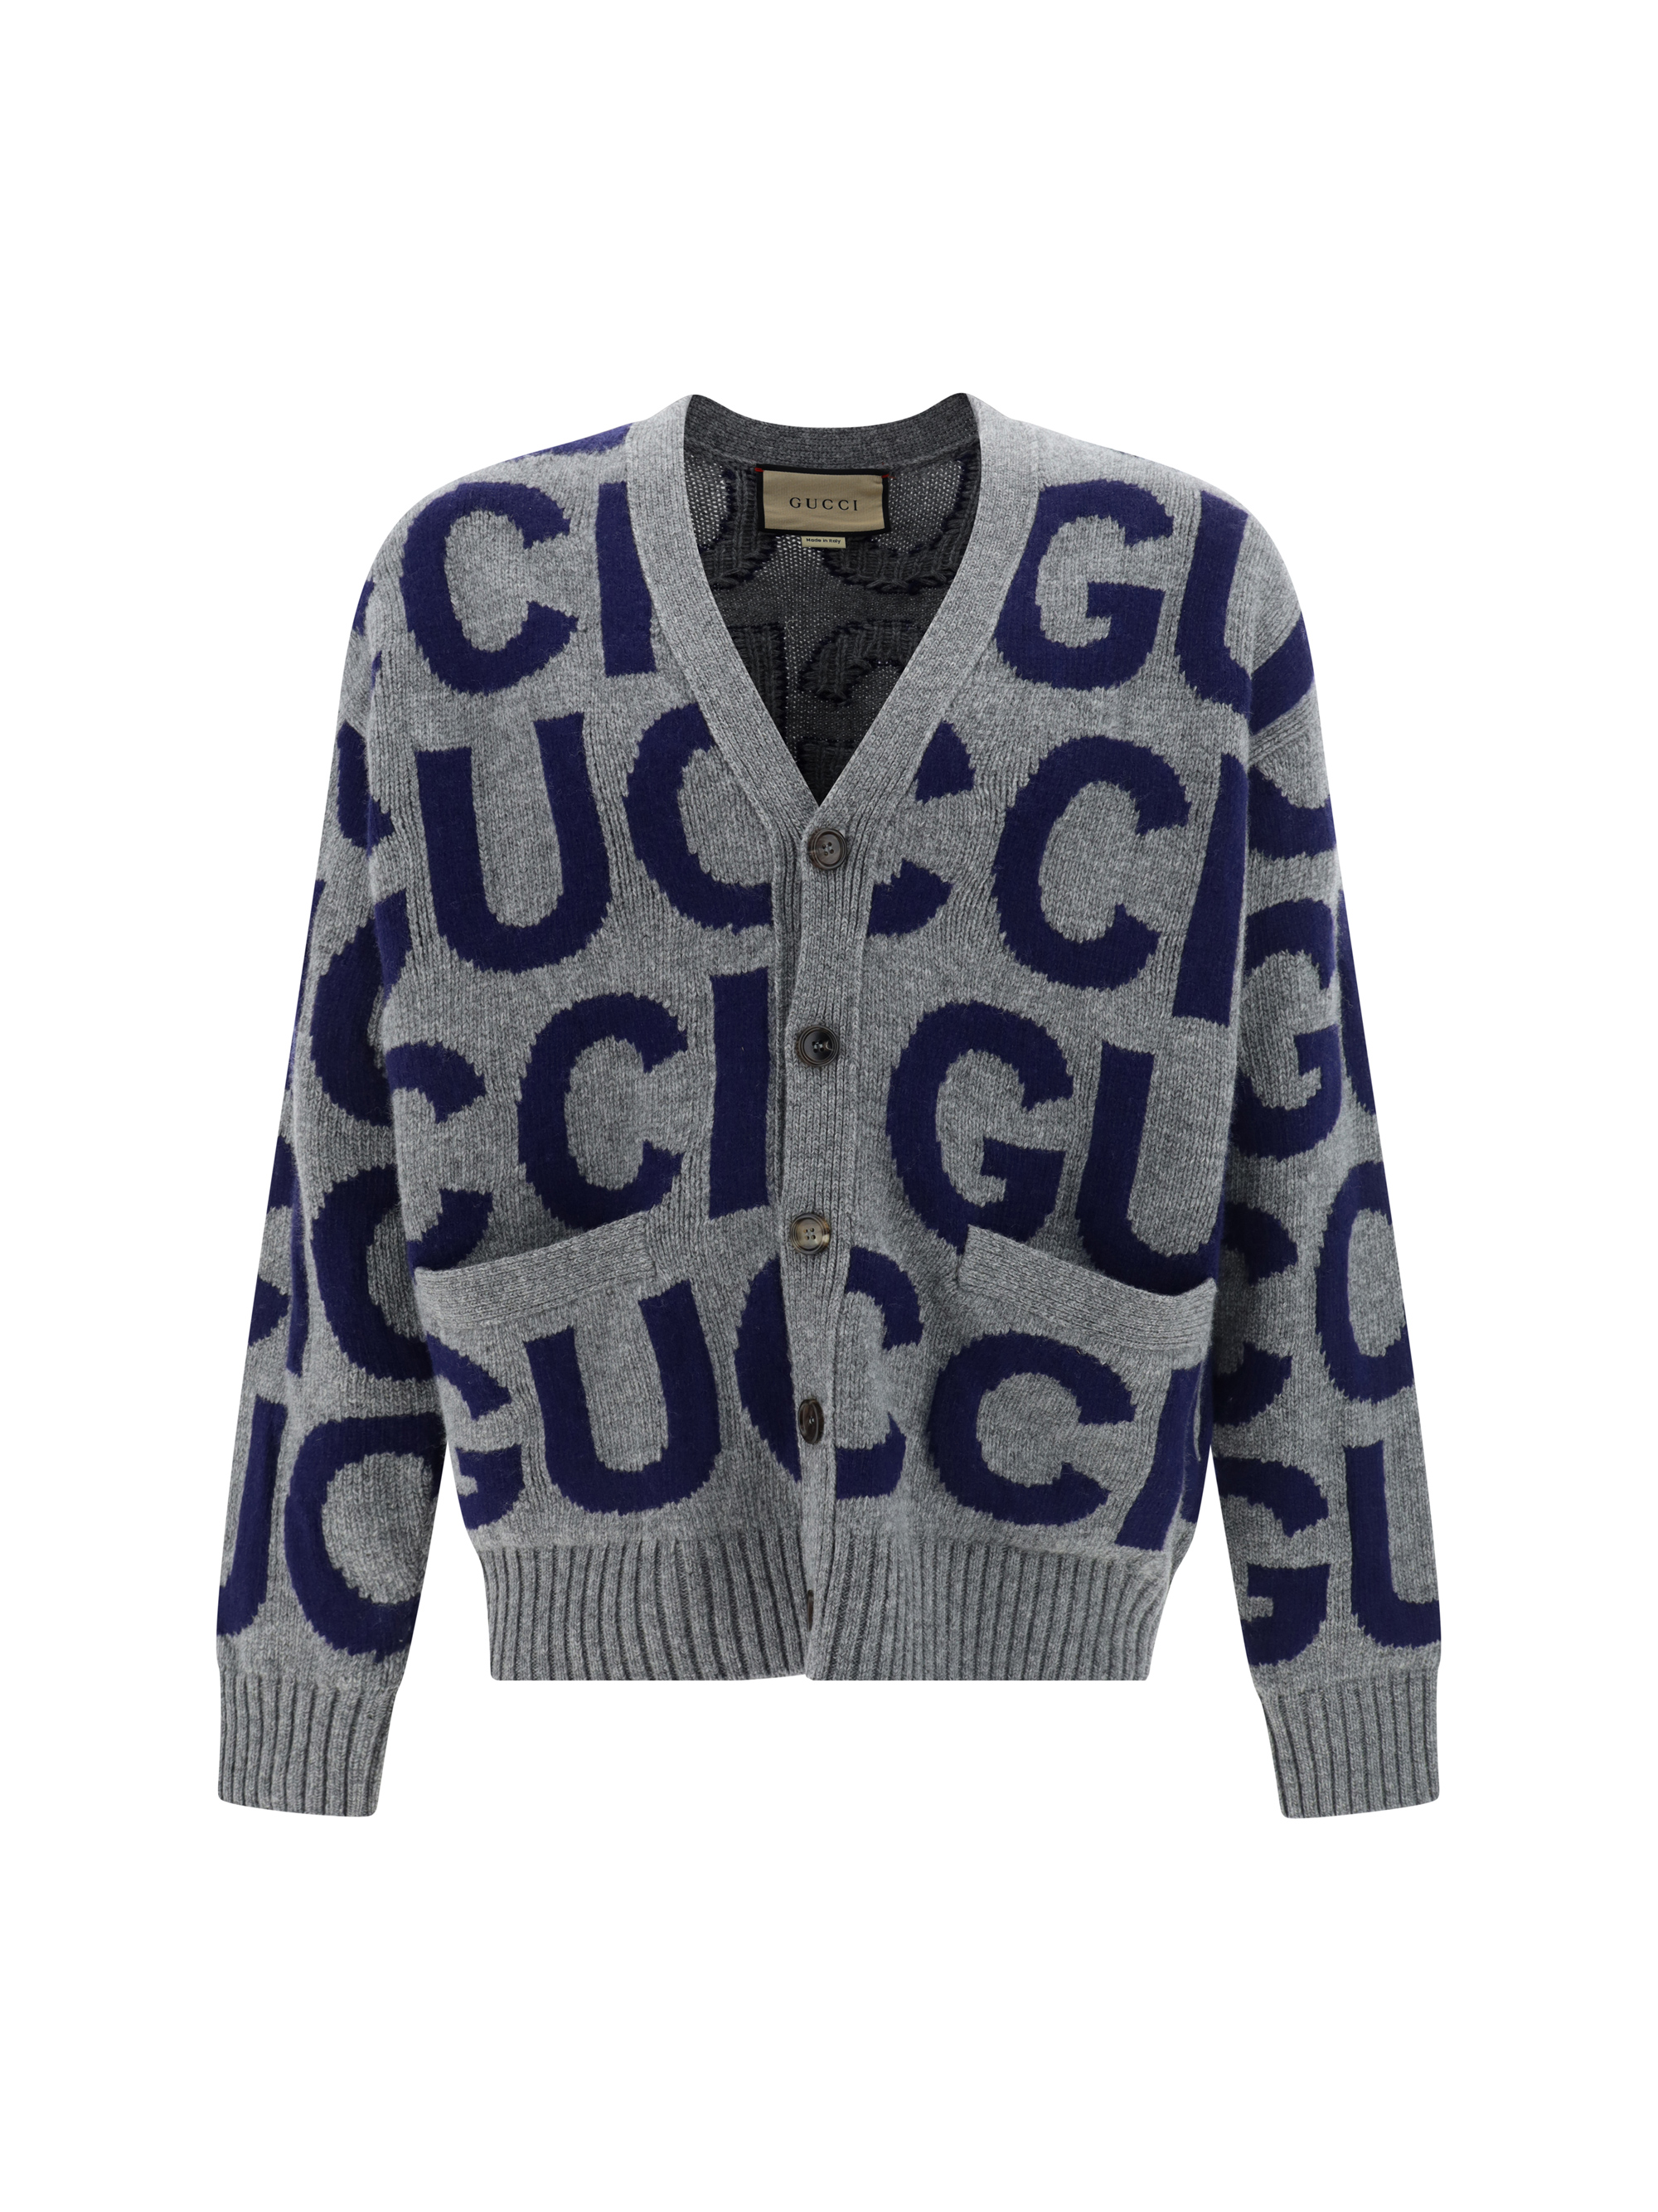 Shop Gucci Cardigan In Grey/blue